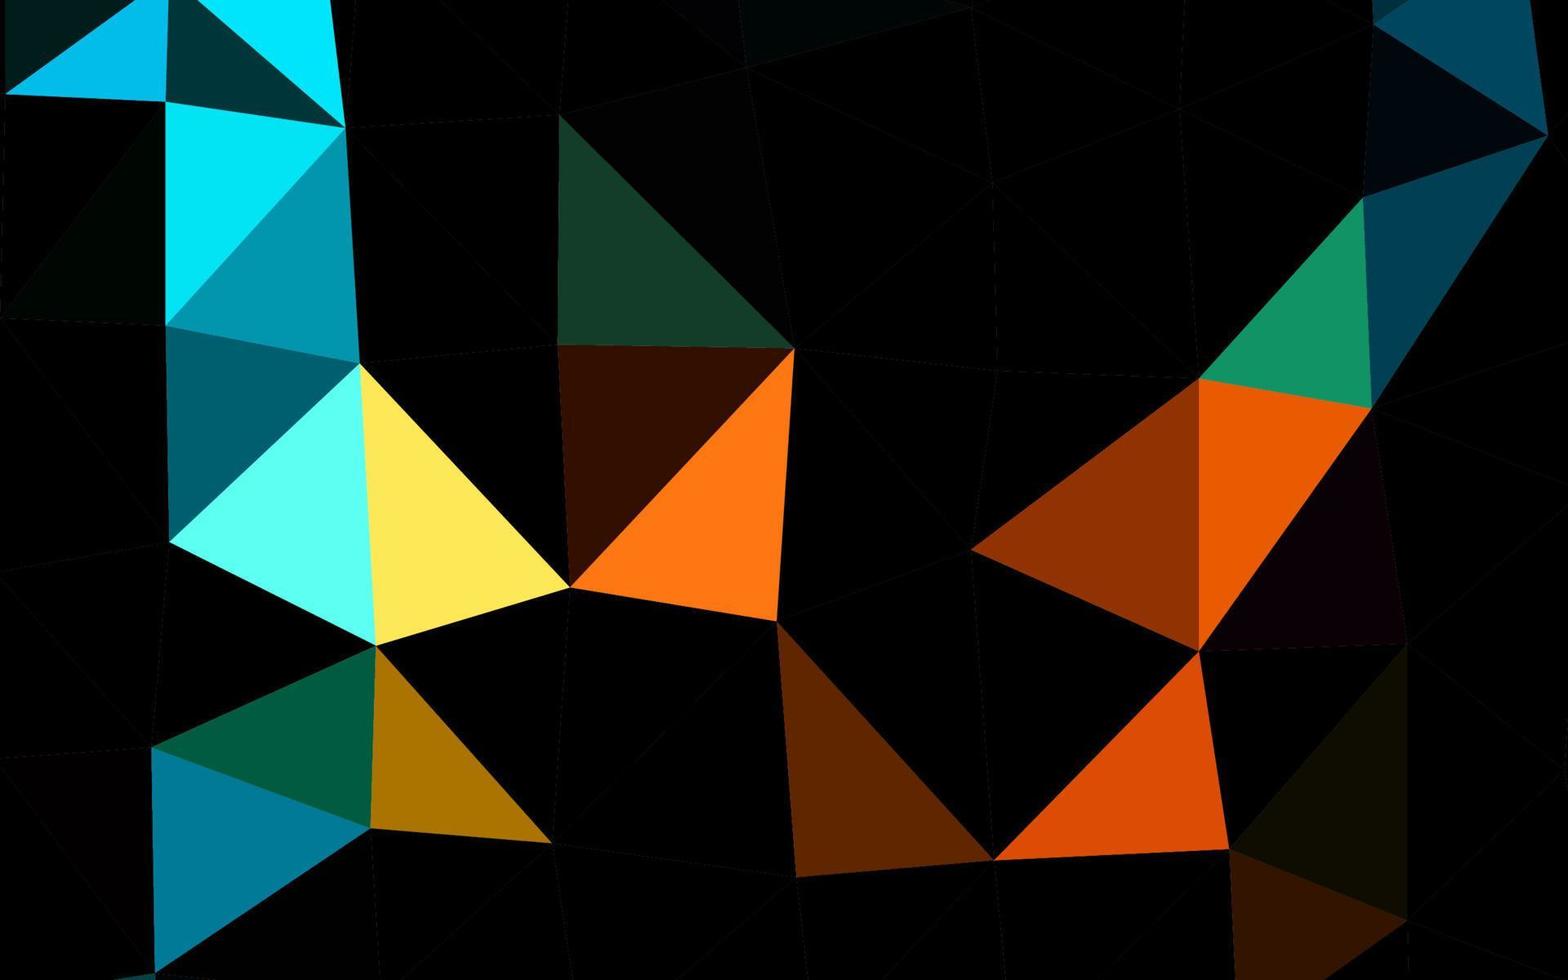 diseño poligonal abstracto vector negro oscuro.